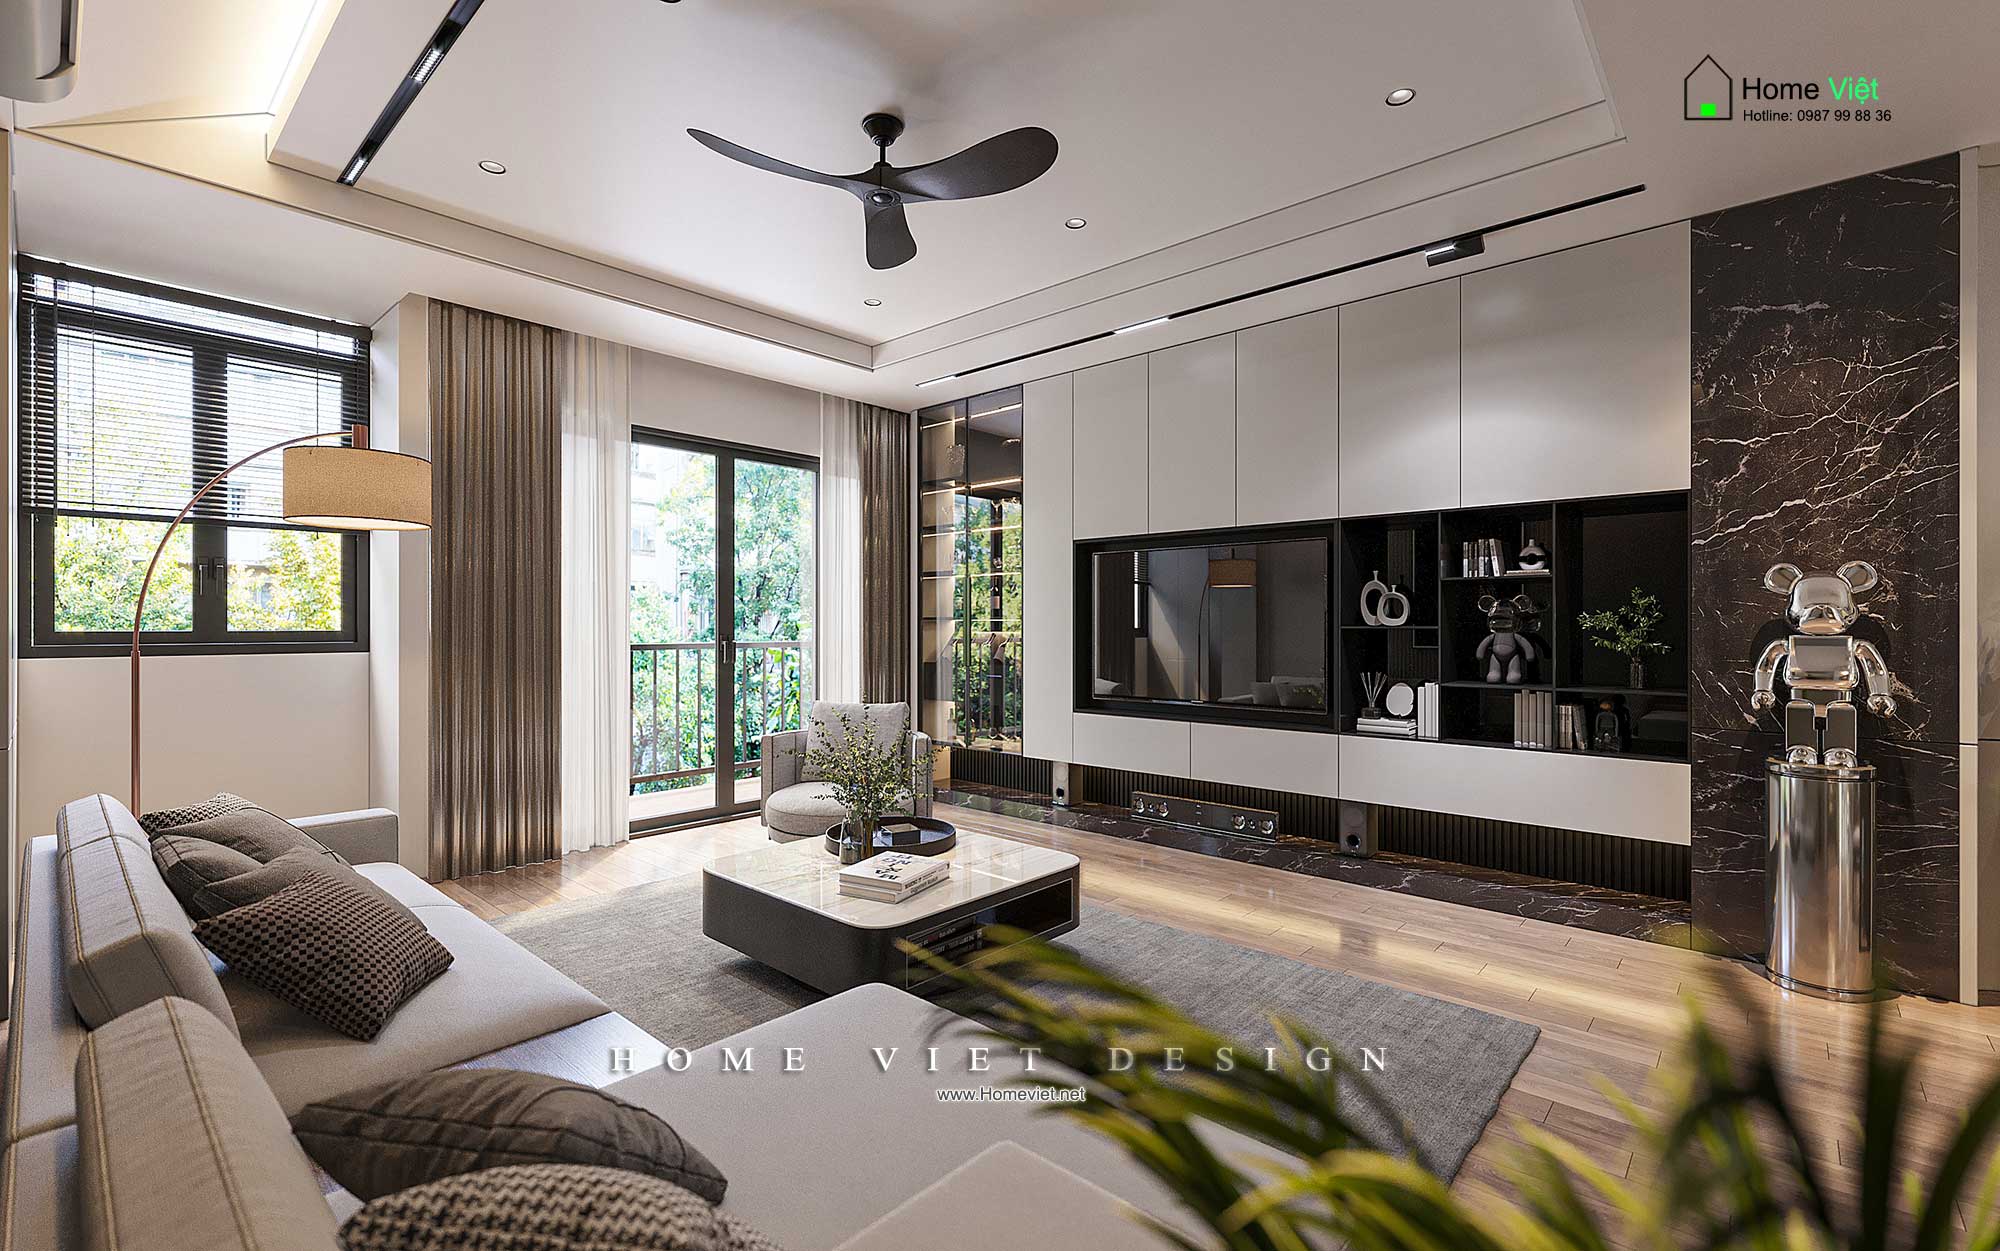 Tuyến Villa – Thiết kế nội thất nhà ở hiện đại tại Long Biên, Hà Nội với tông màu đen trắng làm chủ đạo